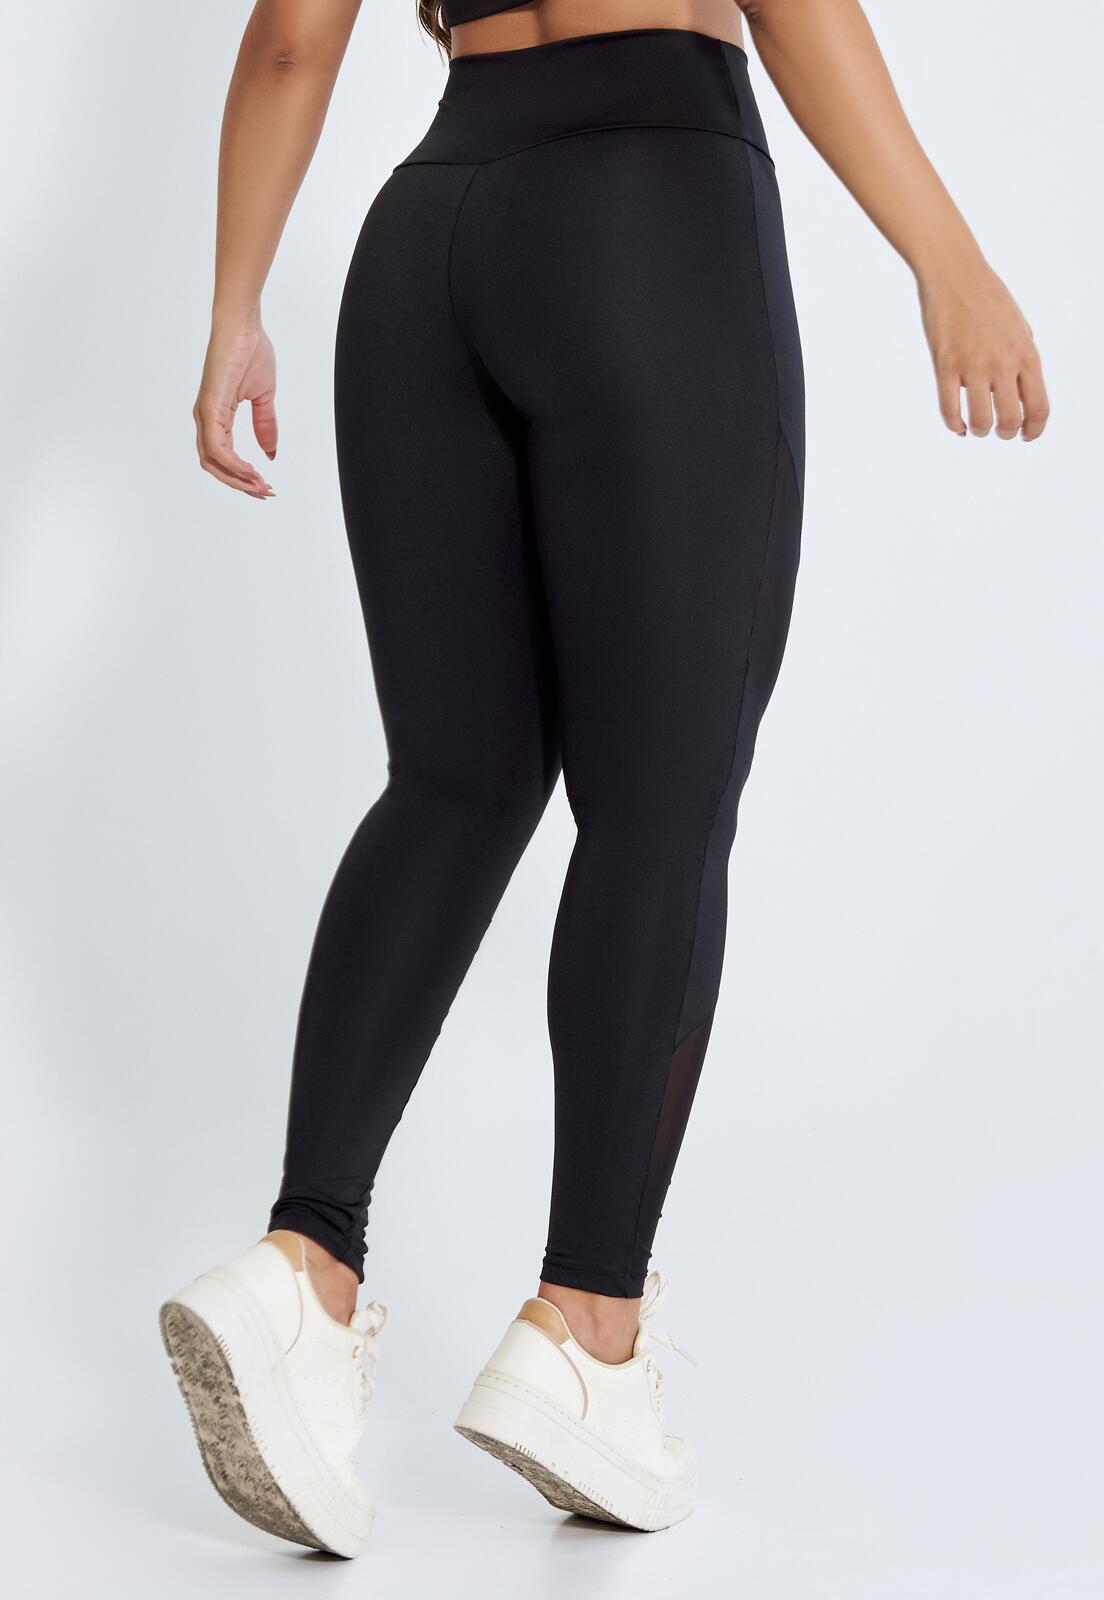 Comprar Calça Legging Fitness Recorte Tule - a partir de R$48,98 - BE  FITNESS: Sua Loja Online de Moda Fitness para um Estilo de Vida Ativo